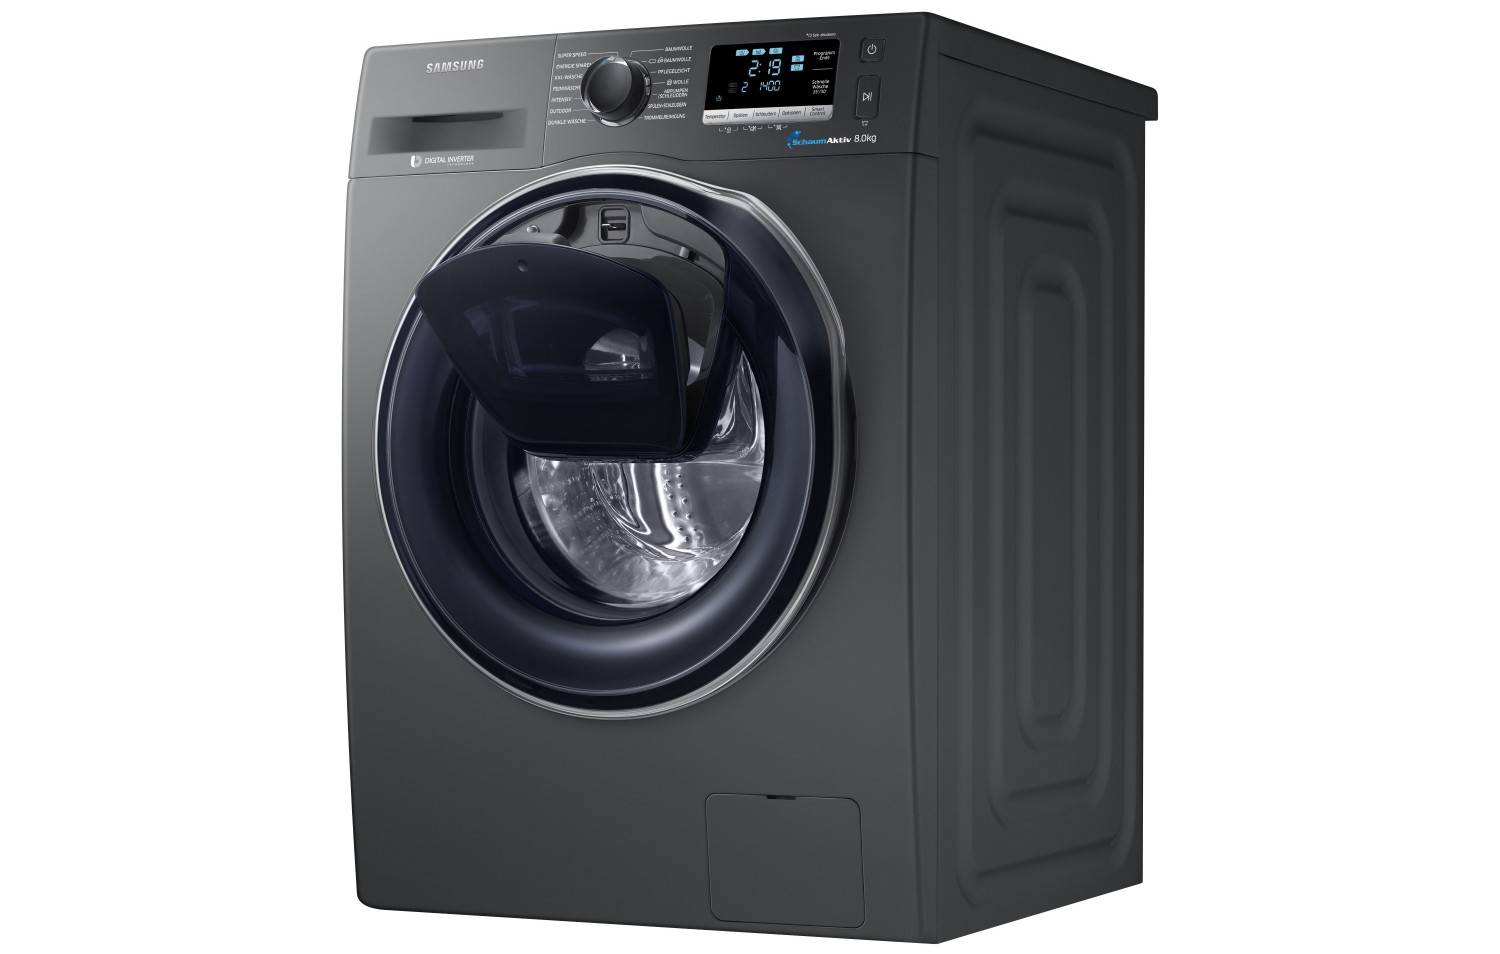 Haushaltsgroßgeräte Schluss mit Weiß: Samsung führt Waschmaschine in Anthrazit ein - News, Bild 1